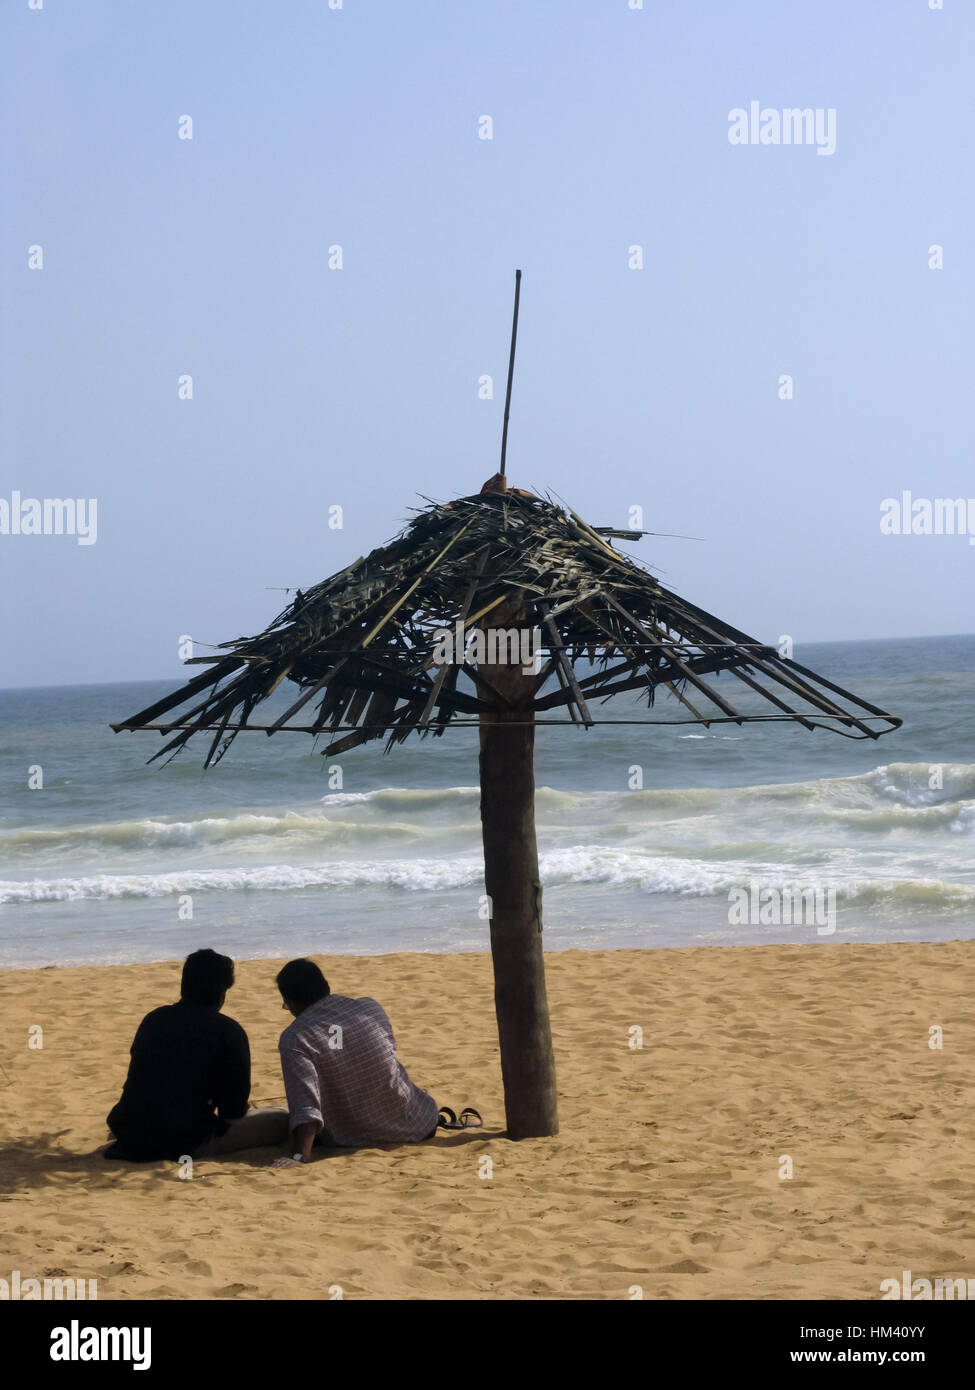 Gli uomini in un momento di relax a Shanghumugham beach. Trivandrum , Kerala, India. Shankumugham Beach è una spiaggia a Thiruvananthapuram distretto di Kerala, India del sud. Foto Stock